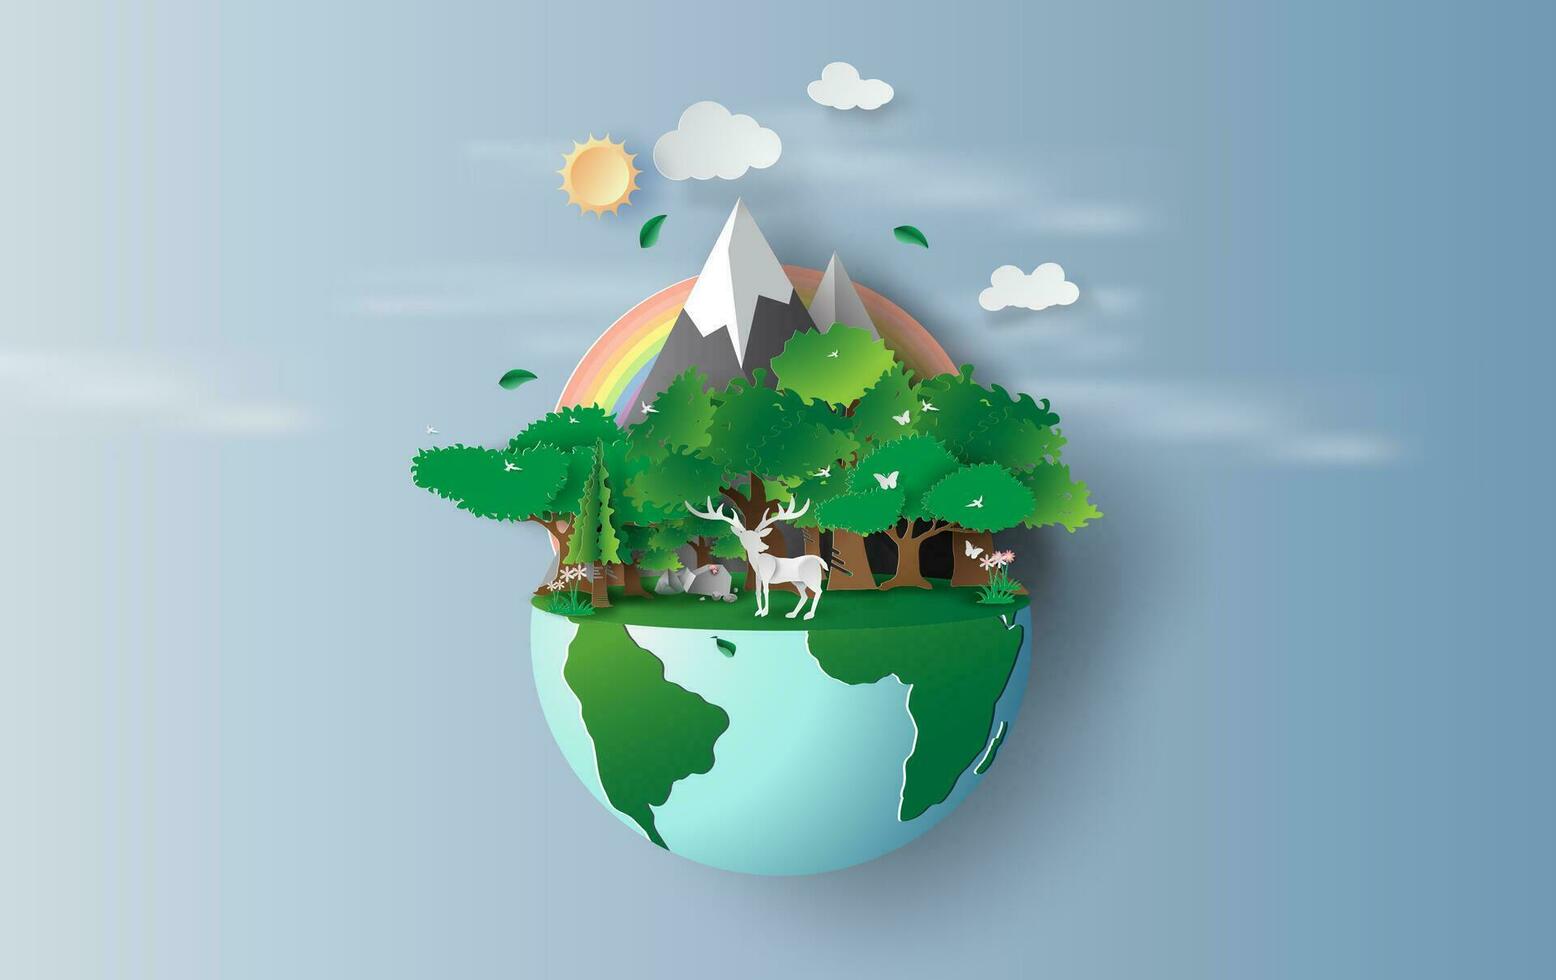 illustratie van rendier in groen bomen bos, creatief origami ontwerp wereld milieu en aarde dag concept idee.landschap dieren in het wild met hert in groen natuur fabriek door regenboog pastelpapier knippen, ambacht vector